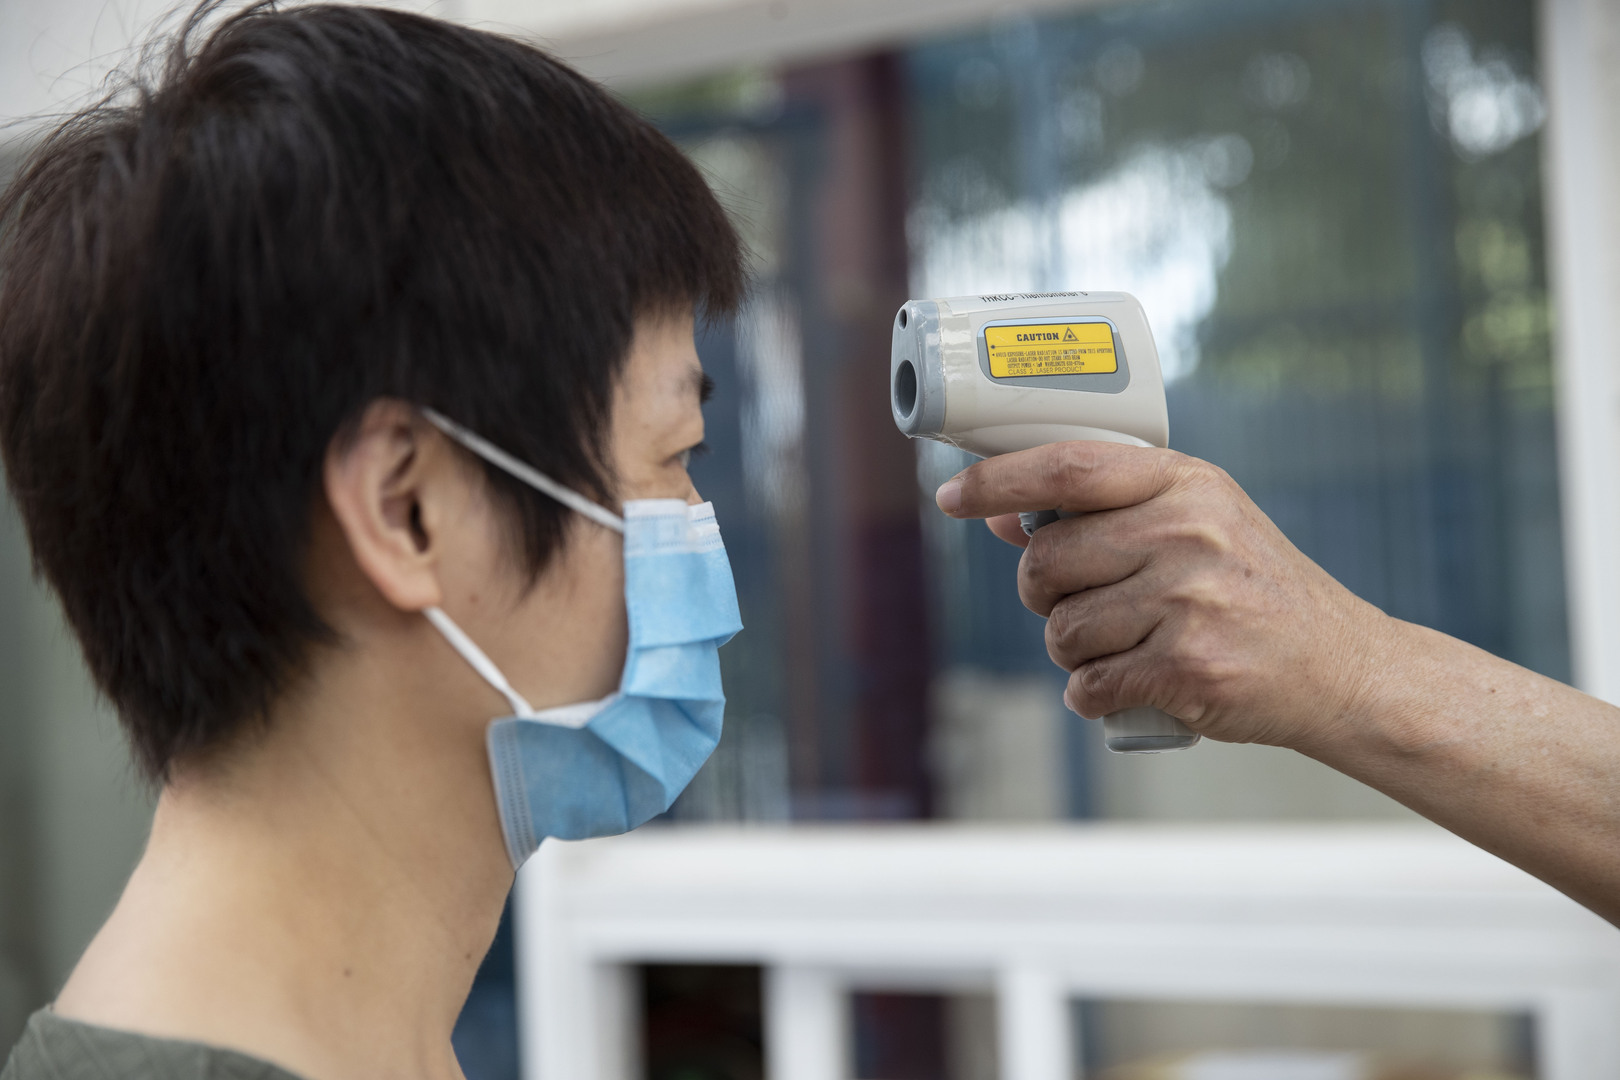 الصين تسجل 5 حالات جديدة للإصابة بفيروس كورونا